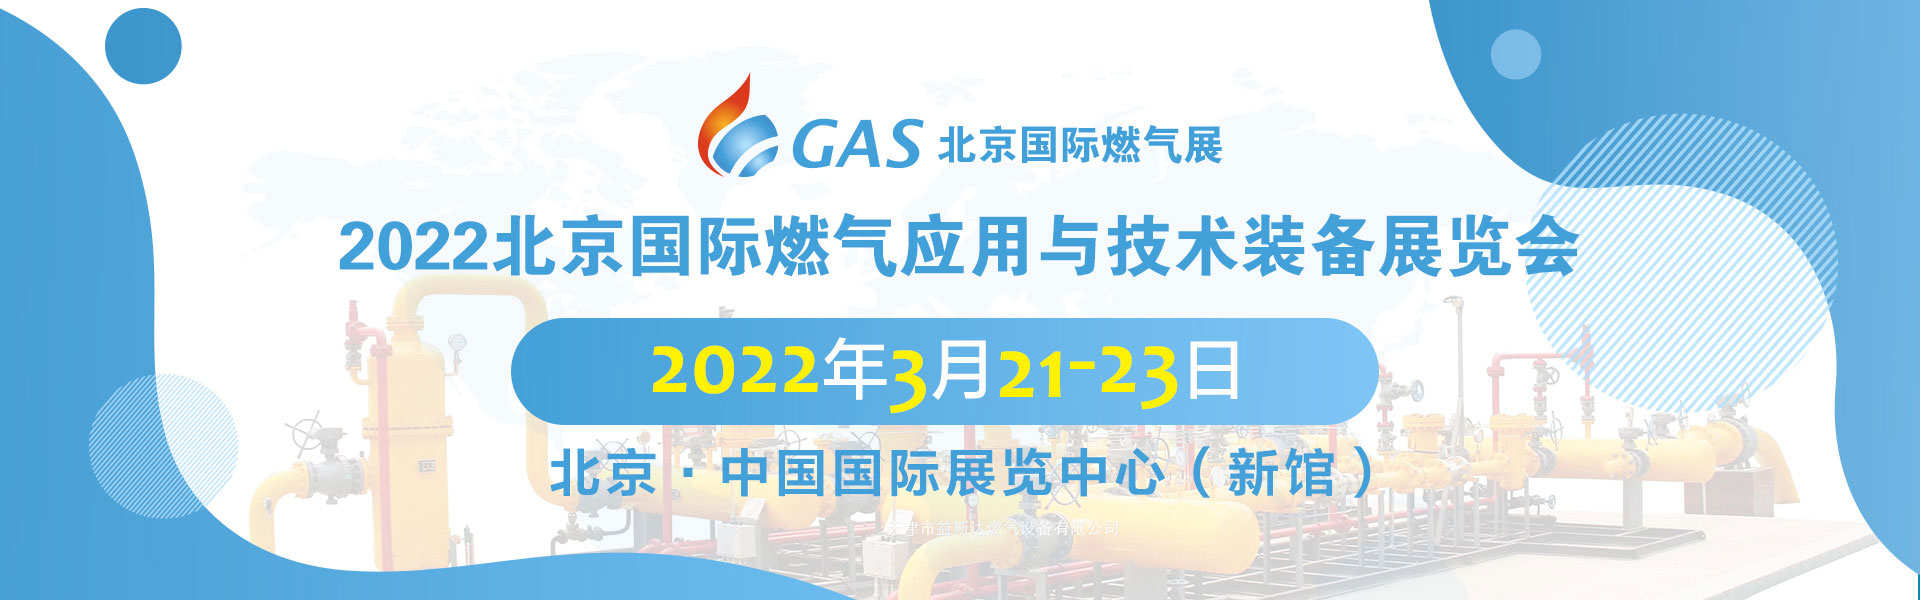 北京国际燃气应用与技术装备展览会